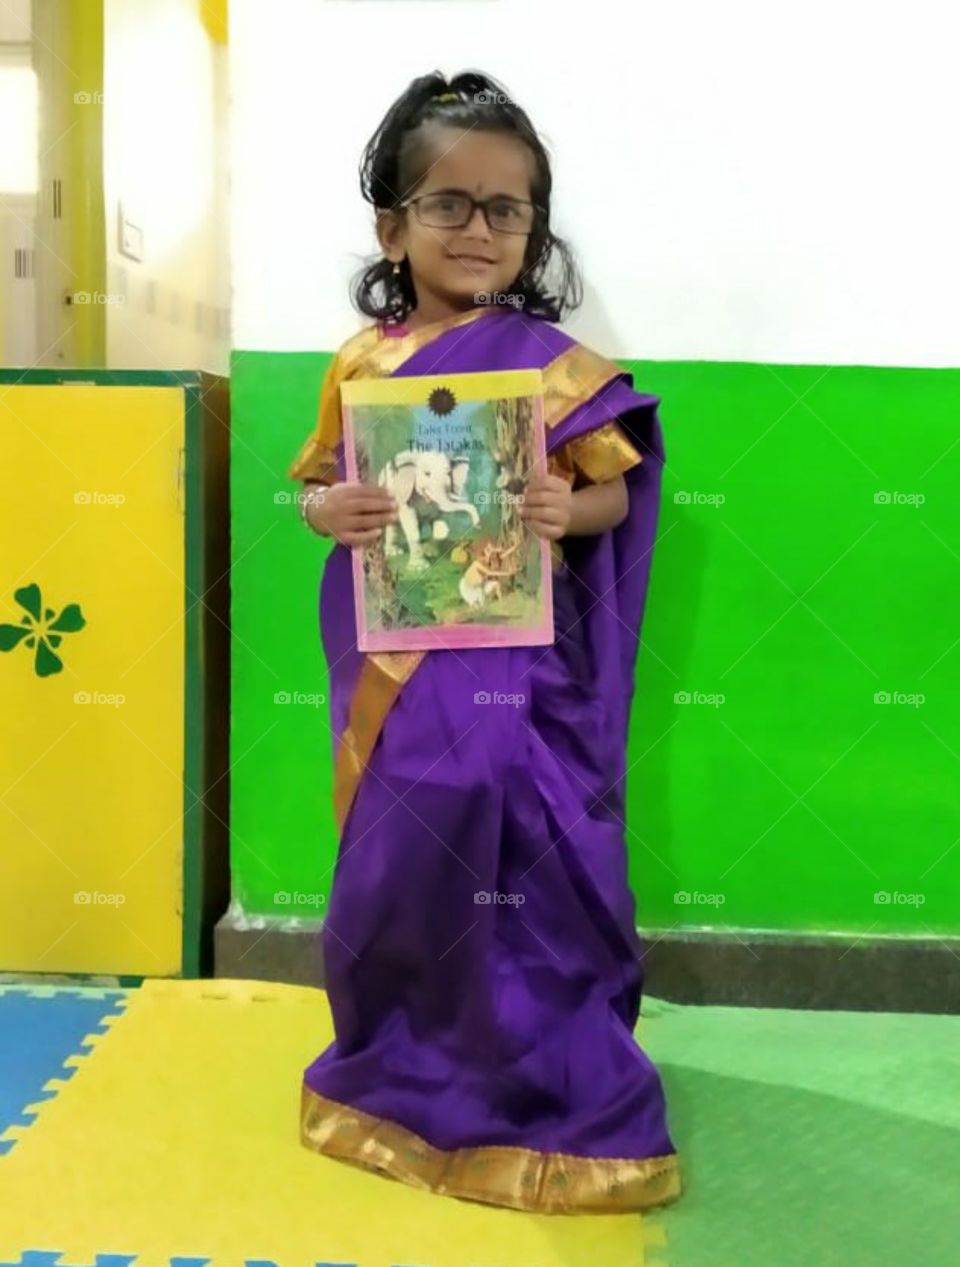 A little girl posing as a Teacher